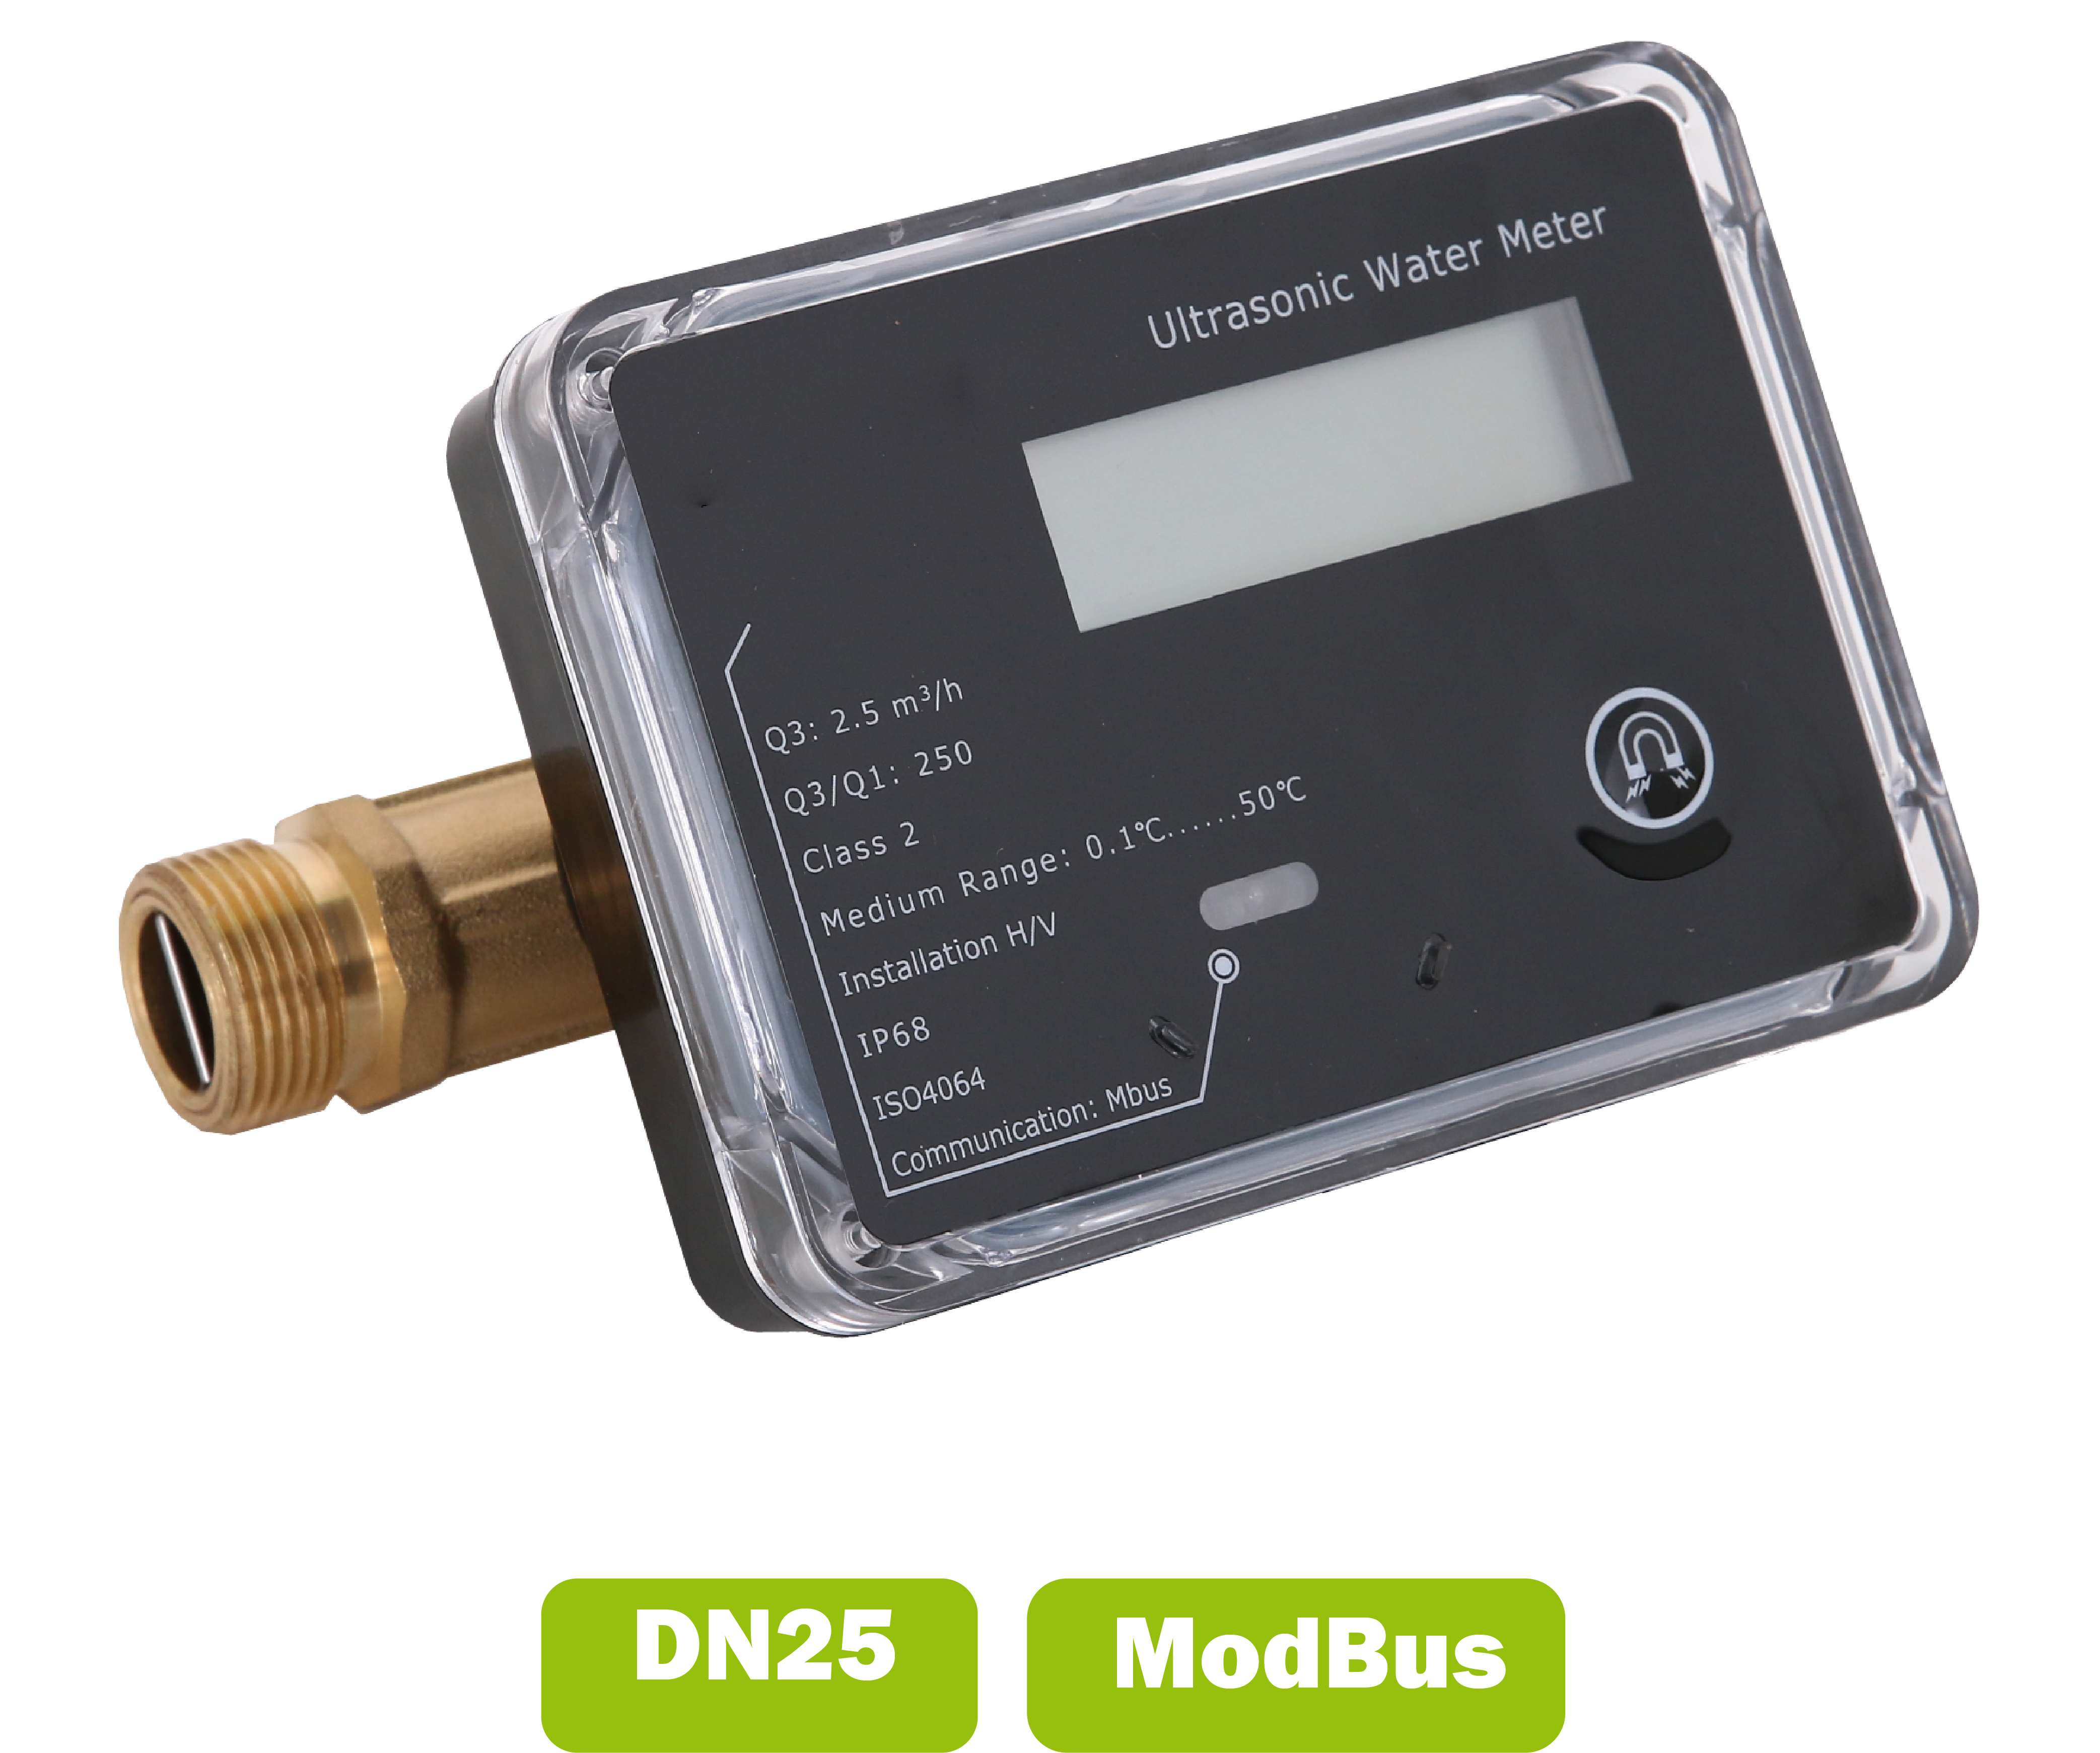 Water meter (calda fredda) a ultrasuoni DN25 portata media 3.5 m3/h con interfaccia Modbus